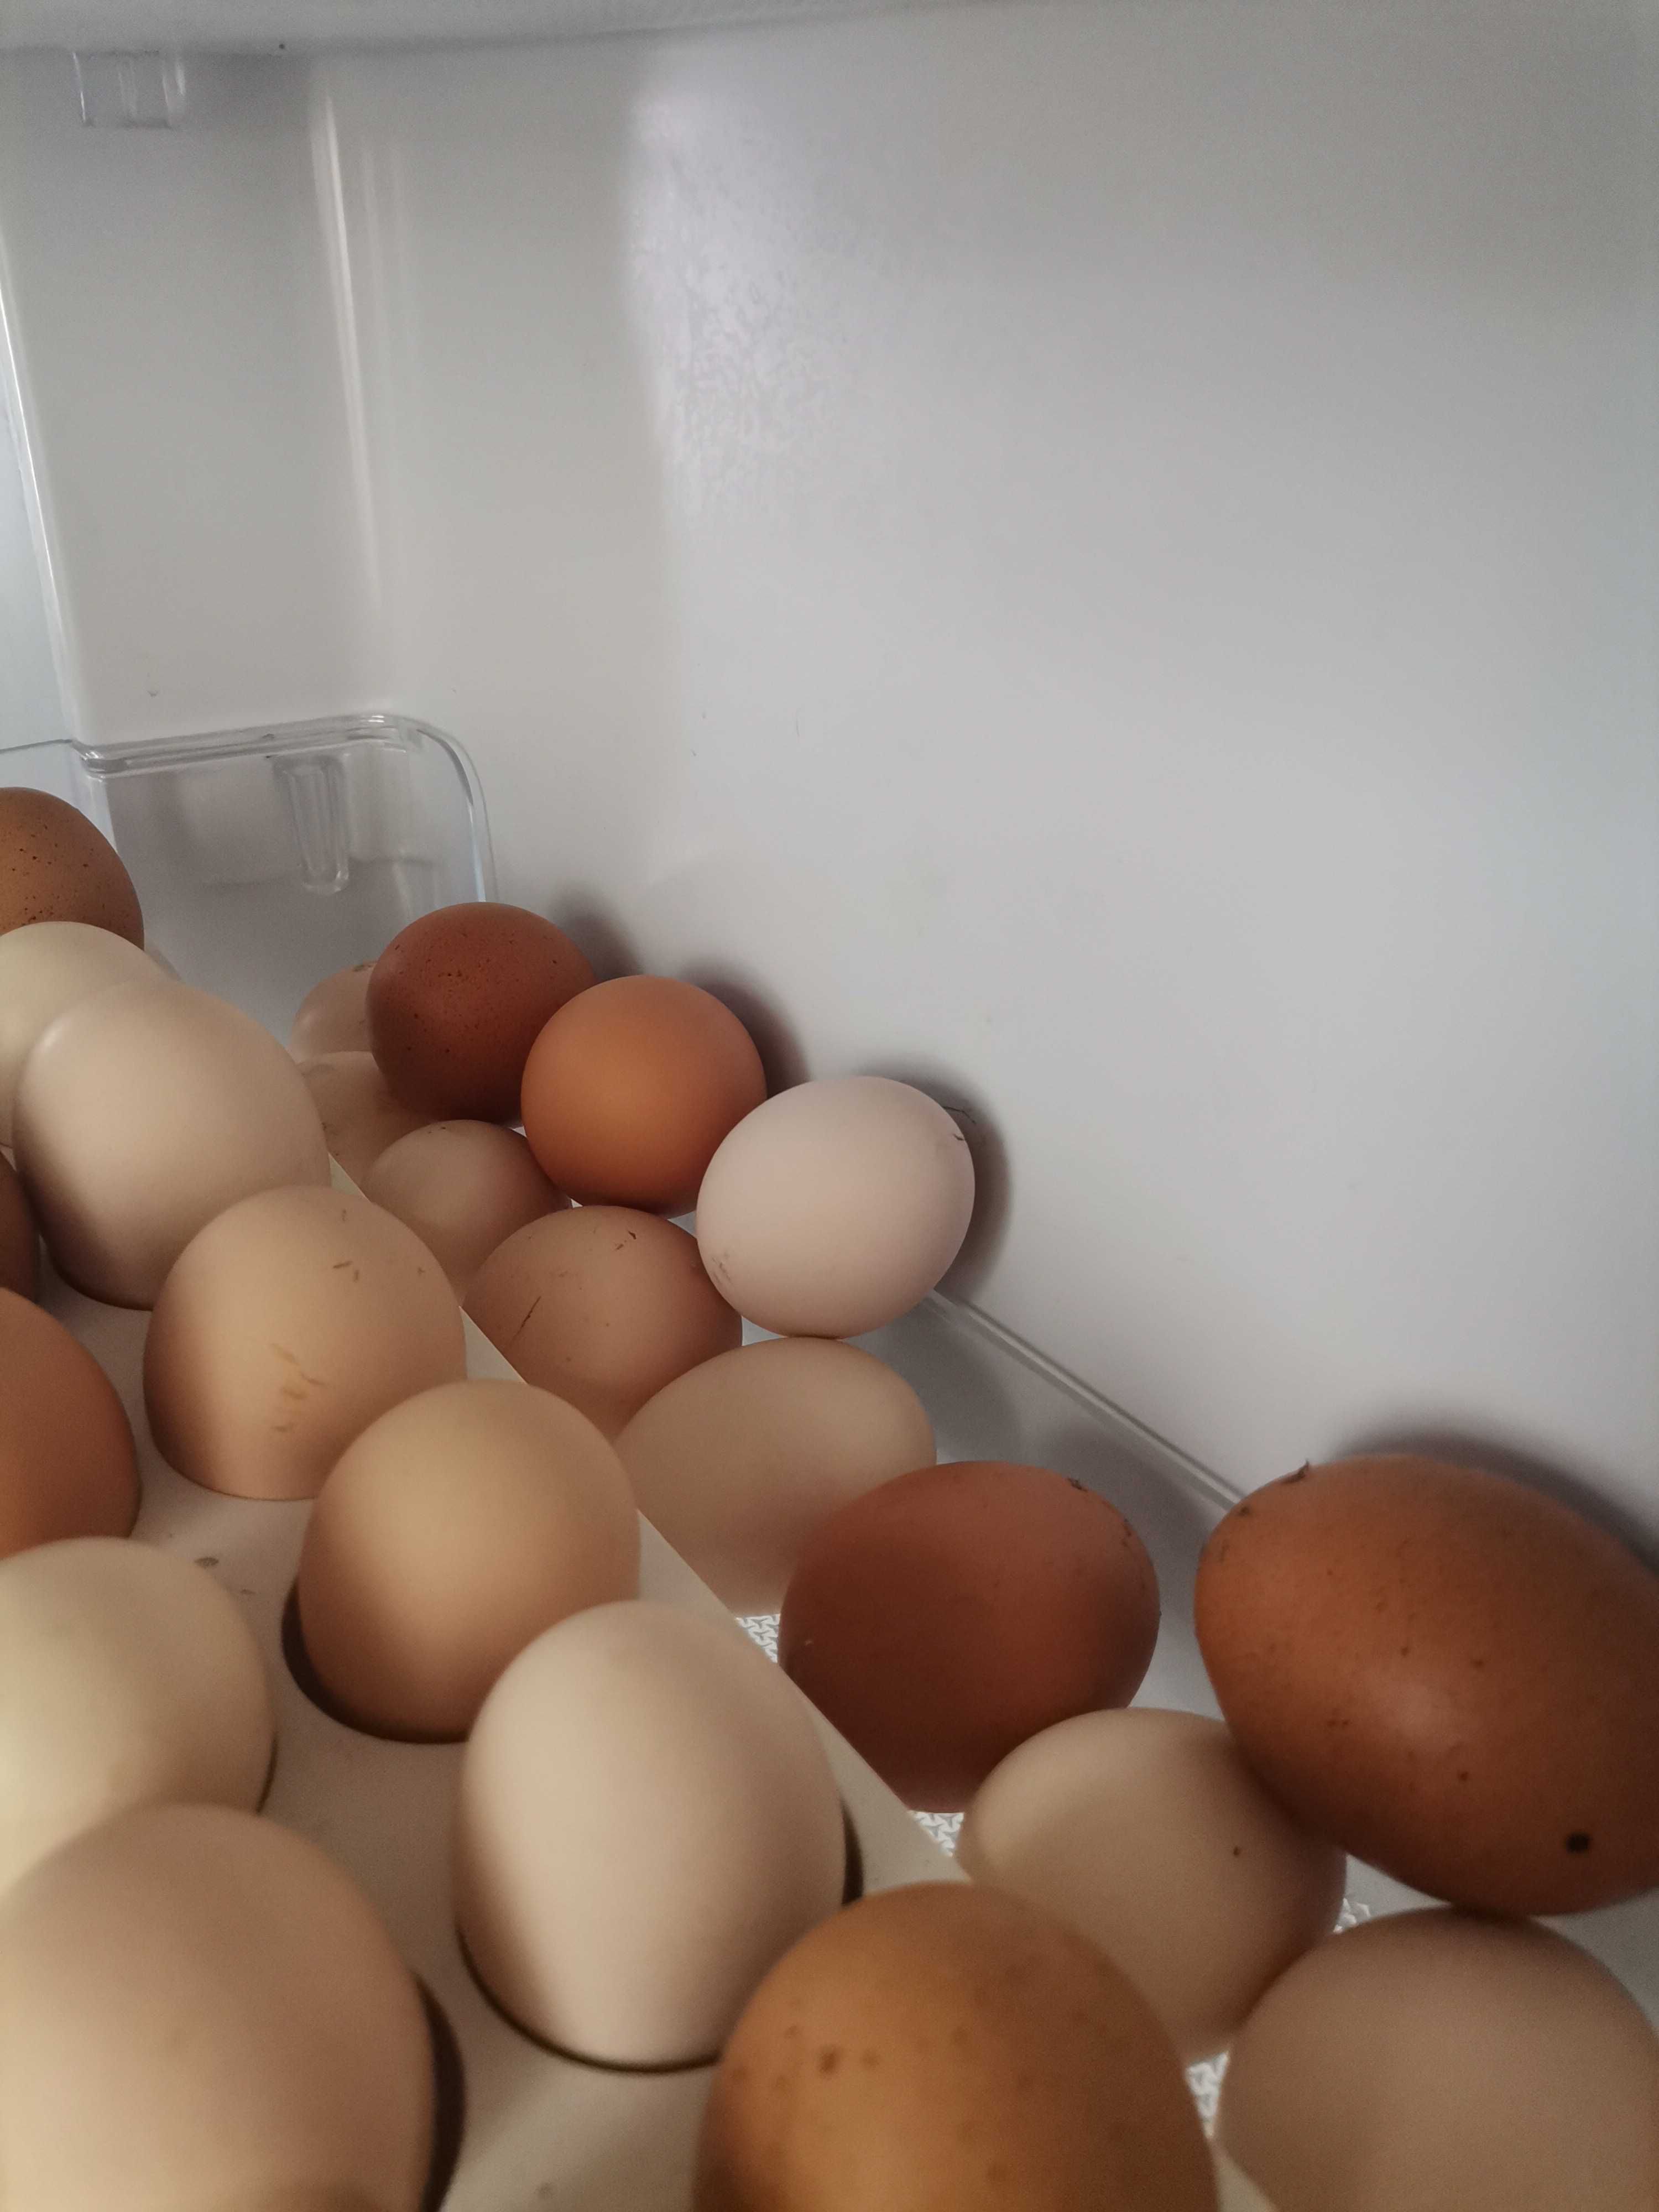 Ovos de galinhas caseiros